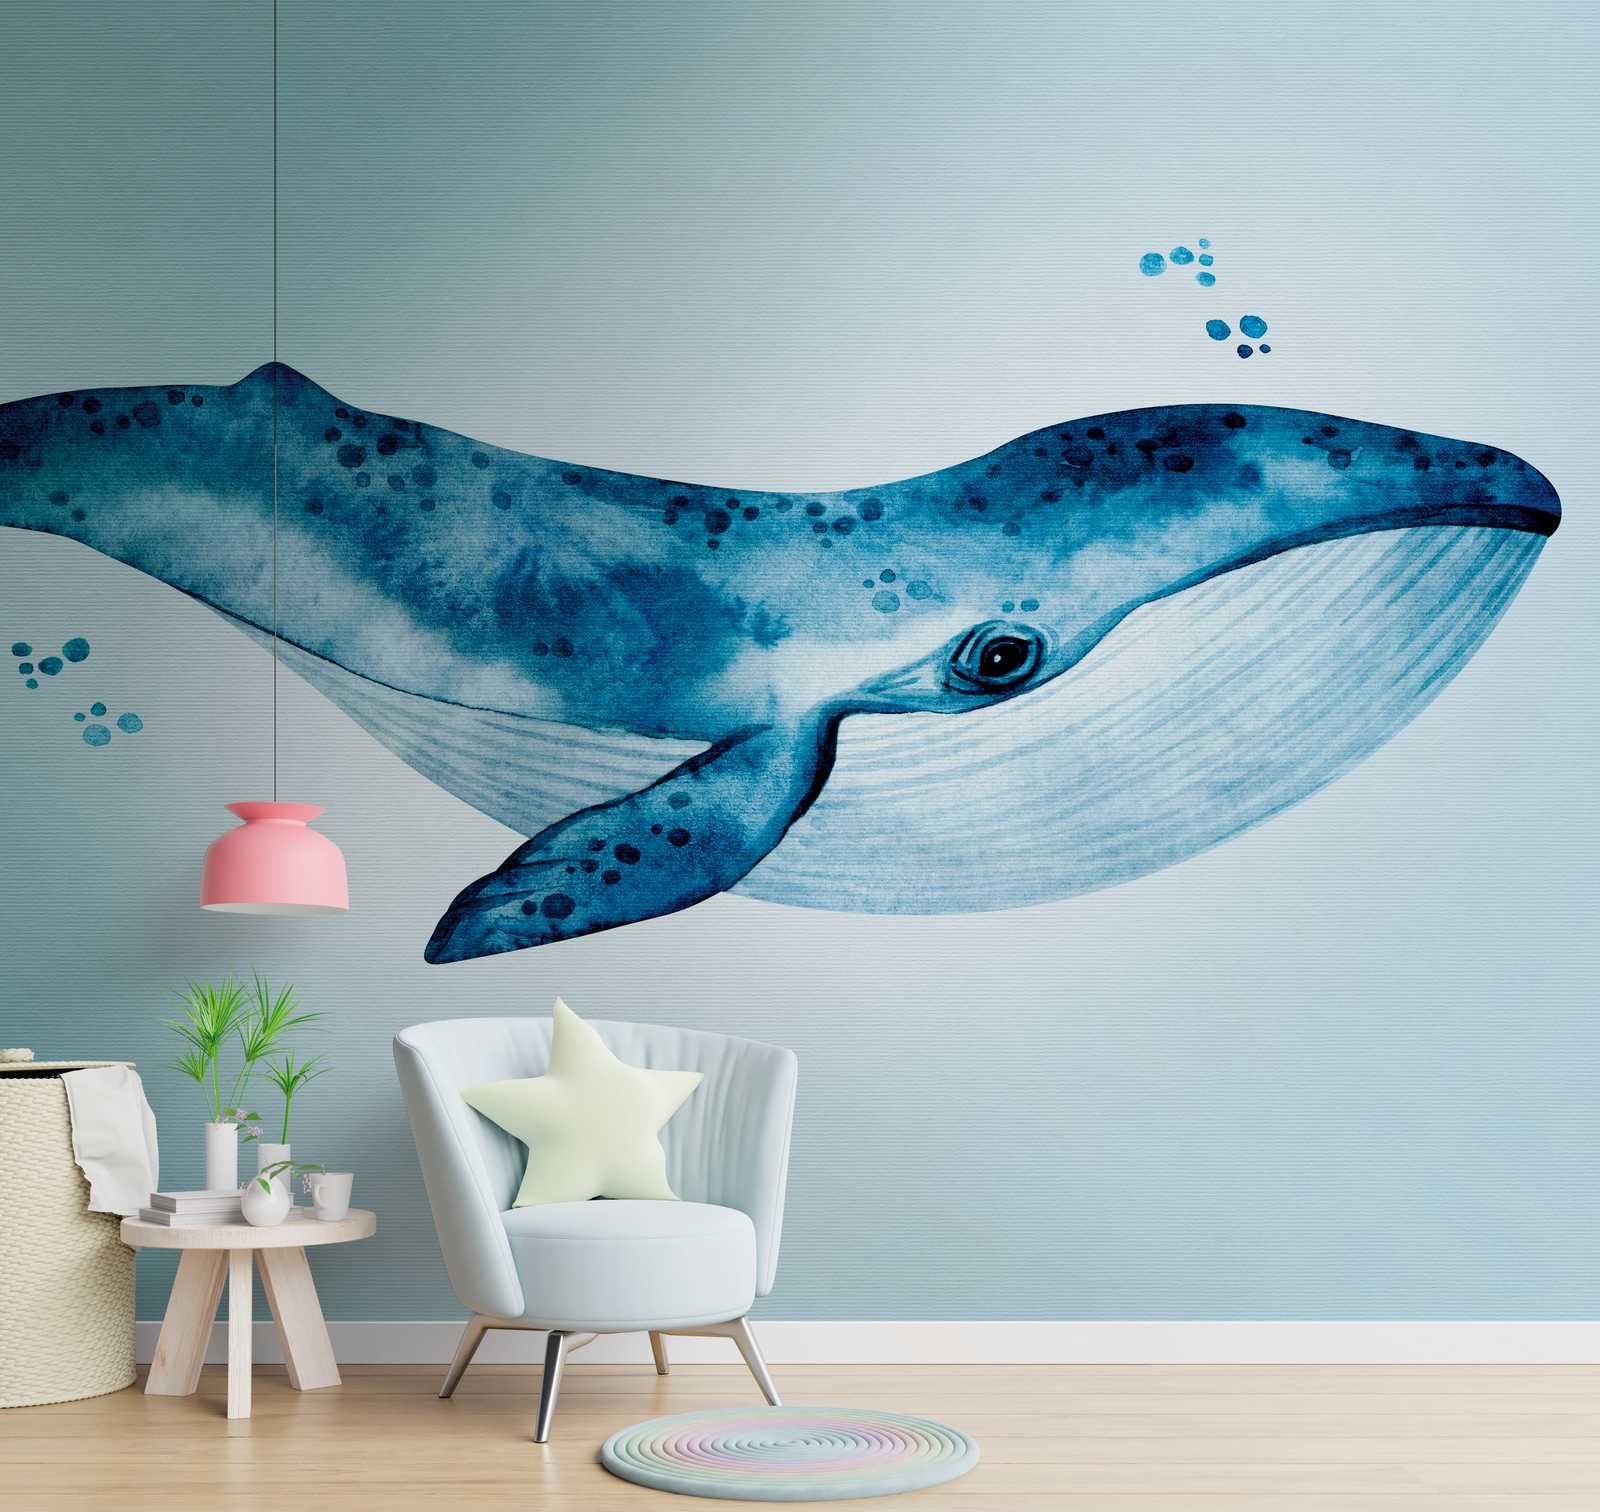             Sfondi novità - carta da parati motivo balena blu sotto l'acqua acquerello
        